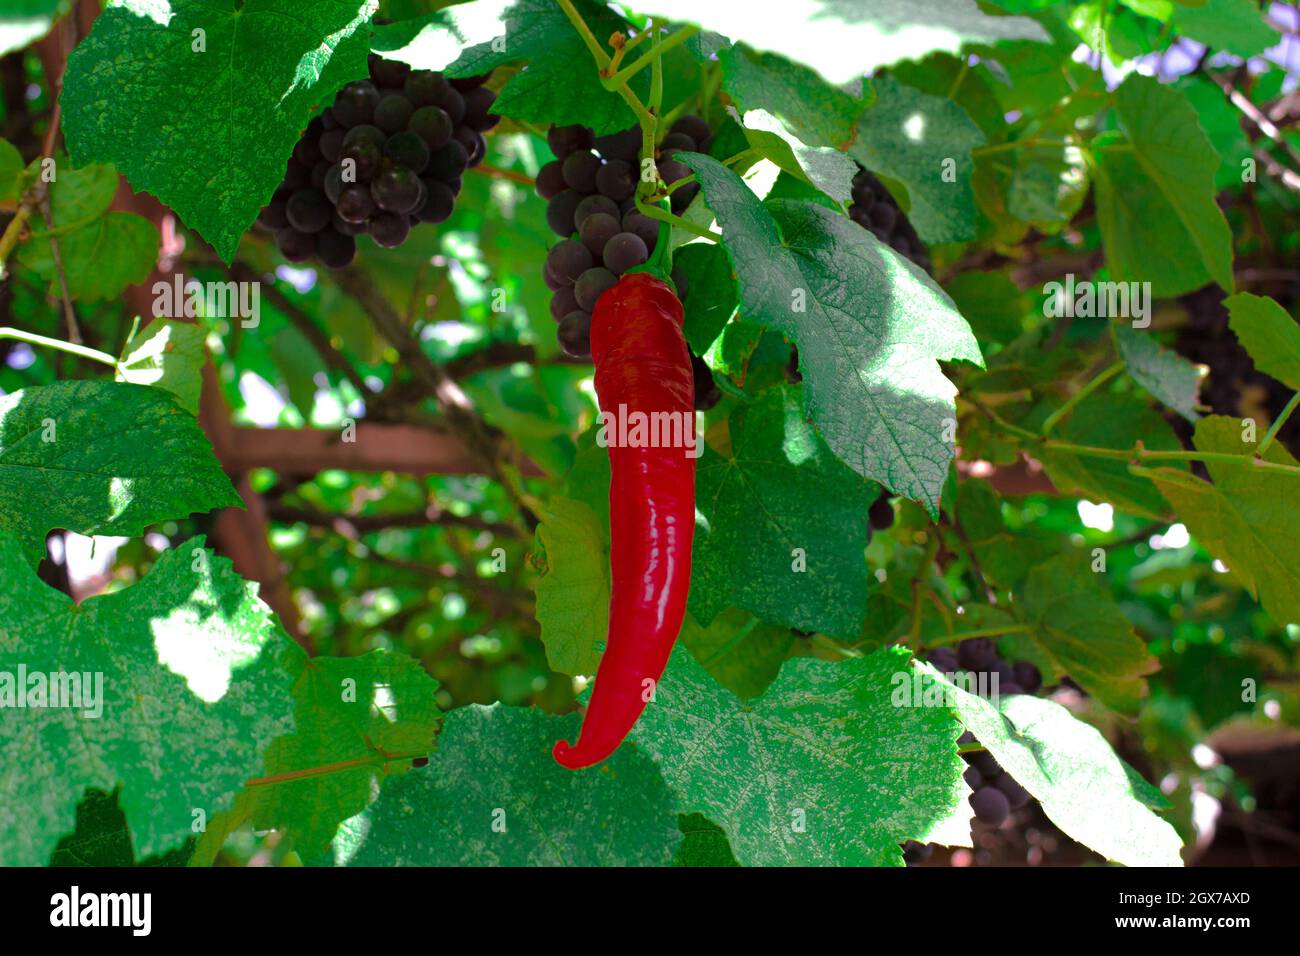 Il peperoncino rosso crebbe su una pianta d'uva. Il risultato non può soddisfare sempre le aspettative. Foto Stock